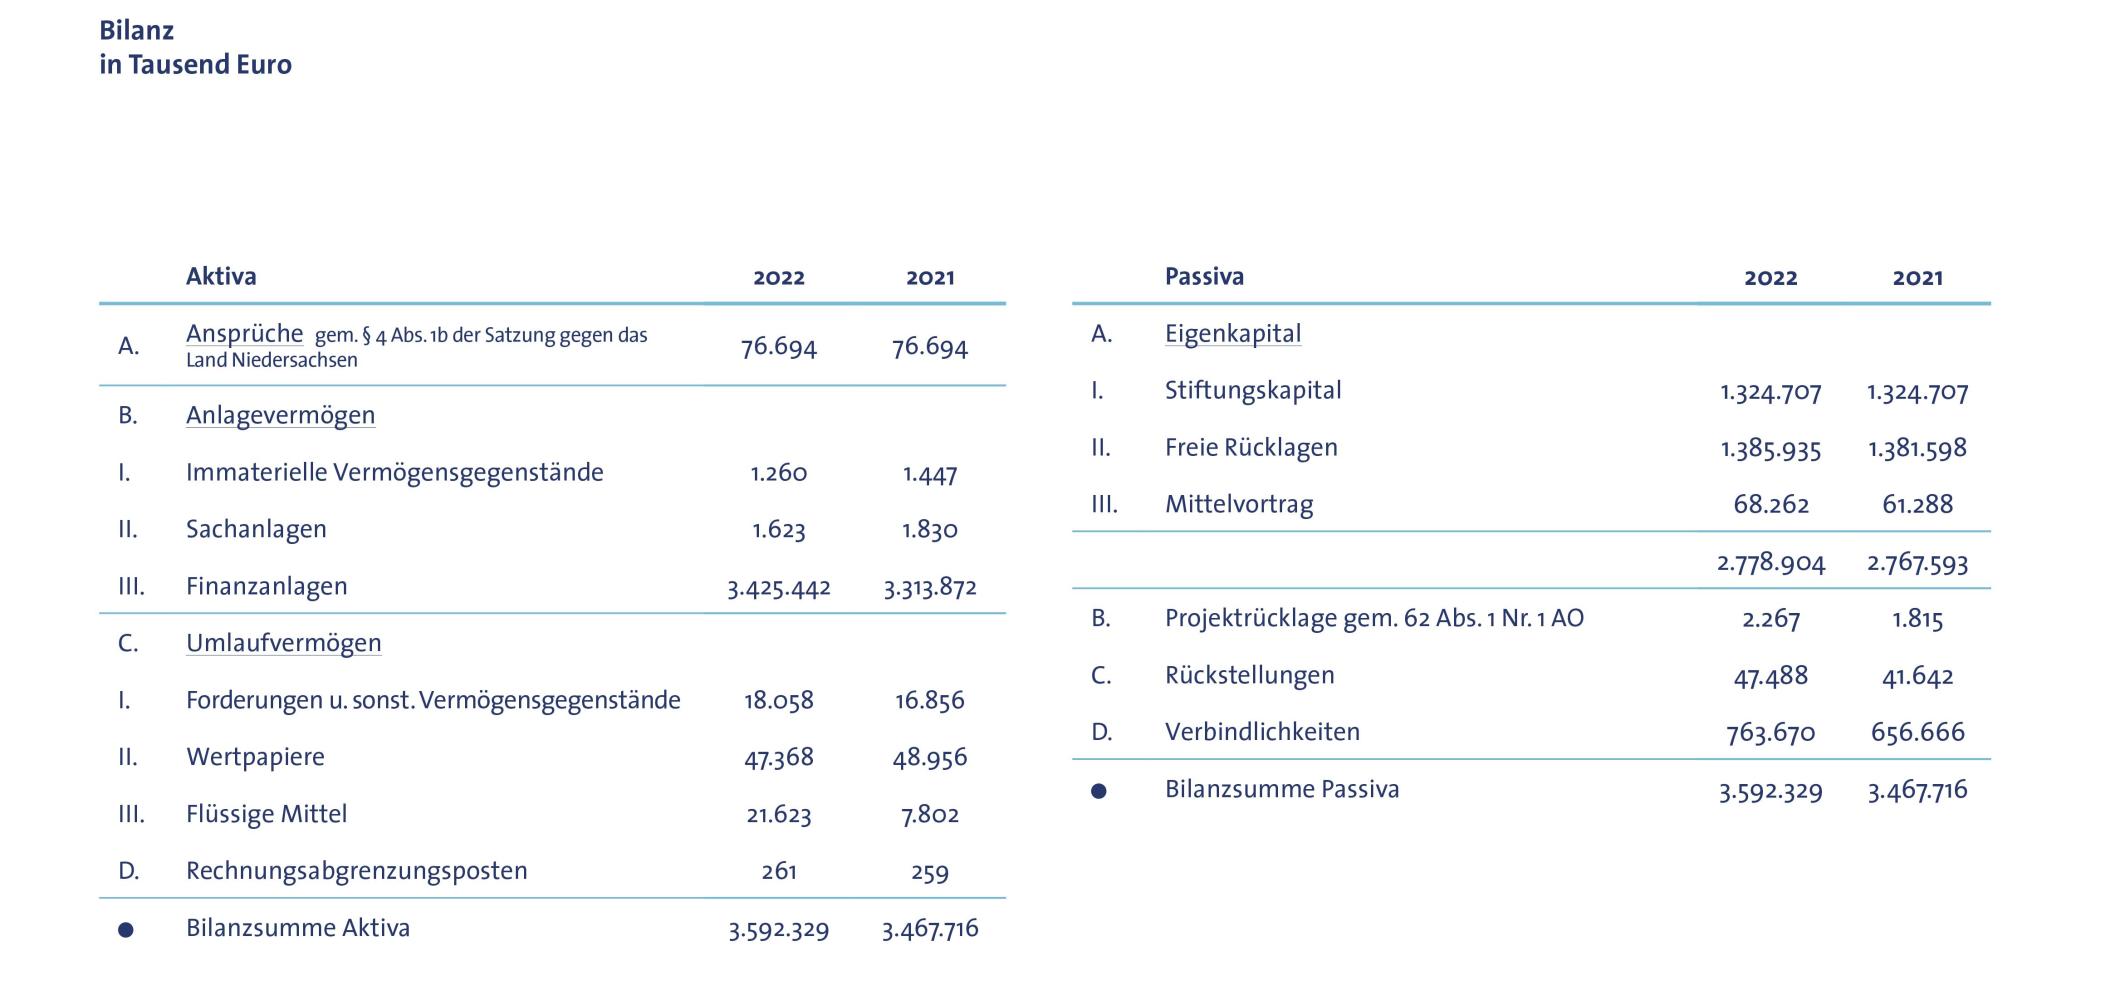 Tabelle mit Bilanz der VolkswagenStiftung